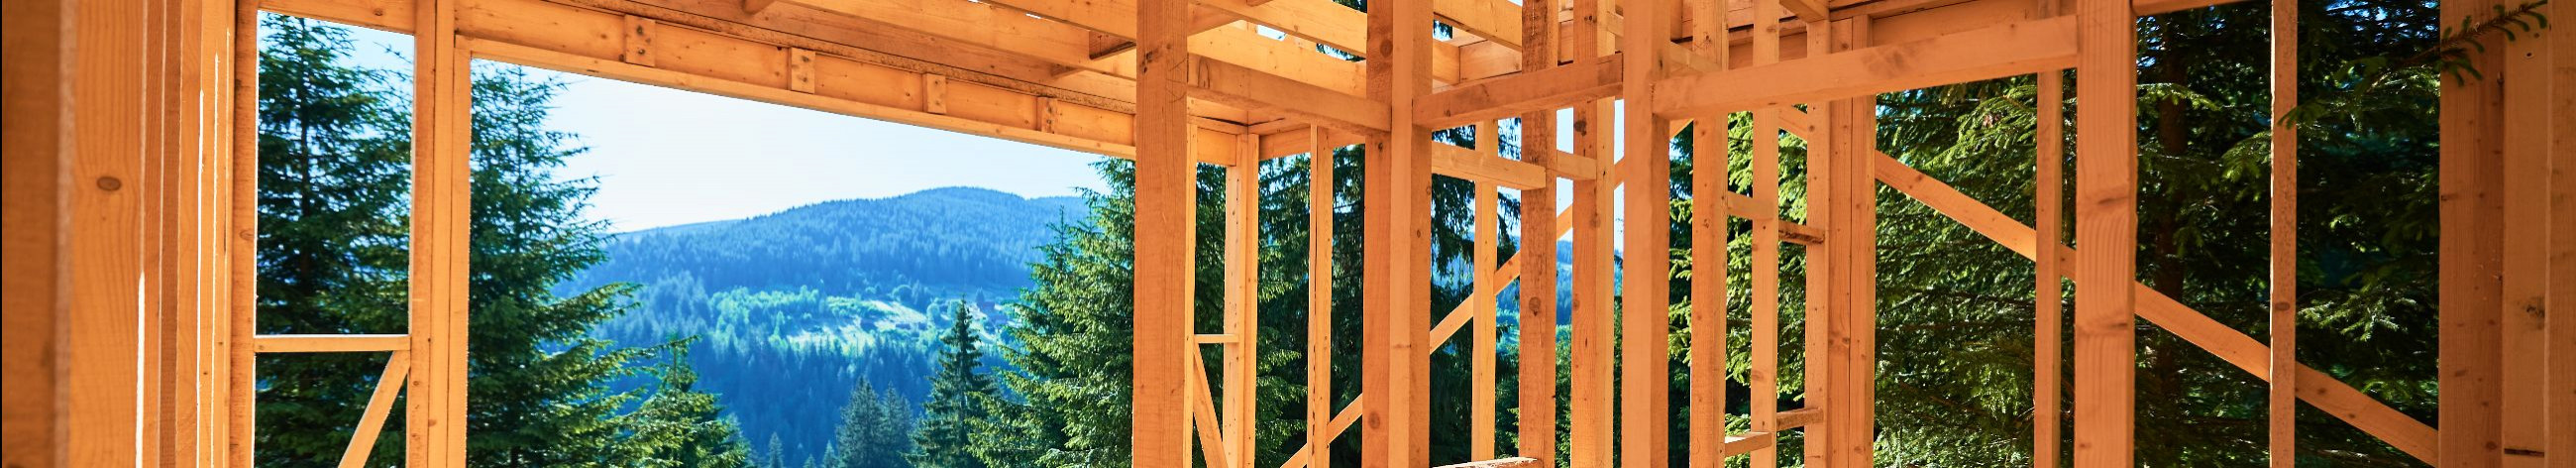 Mountain Ehitus OÜ pakub kvaliteetset üldehituslikke töid alates vundamendidest kuni katusteni. Meil on 12  aastat kogemust ja 2 aastat garantiid. Meie tegevuspiirkonnaks on Põlvamaa, Tartumaa, Valgamaa ja Võrumaa.